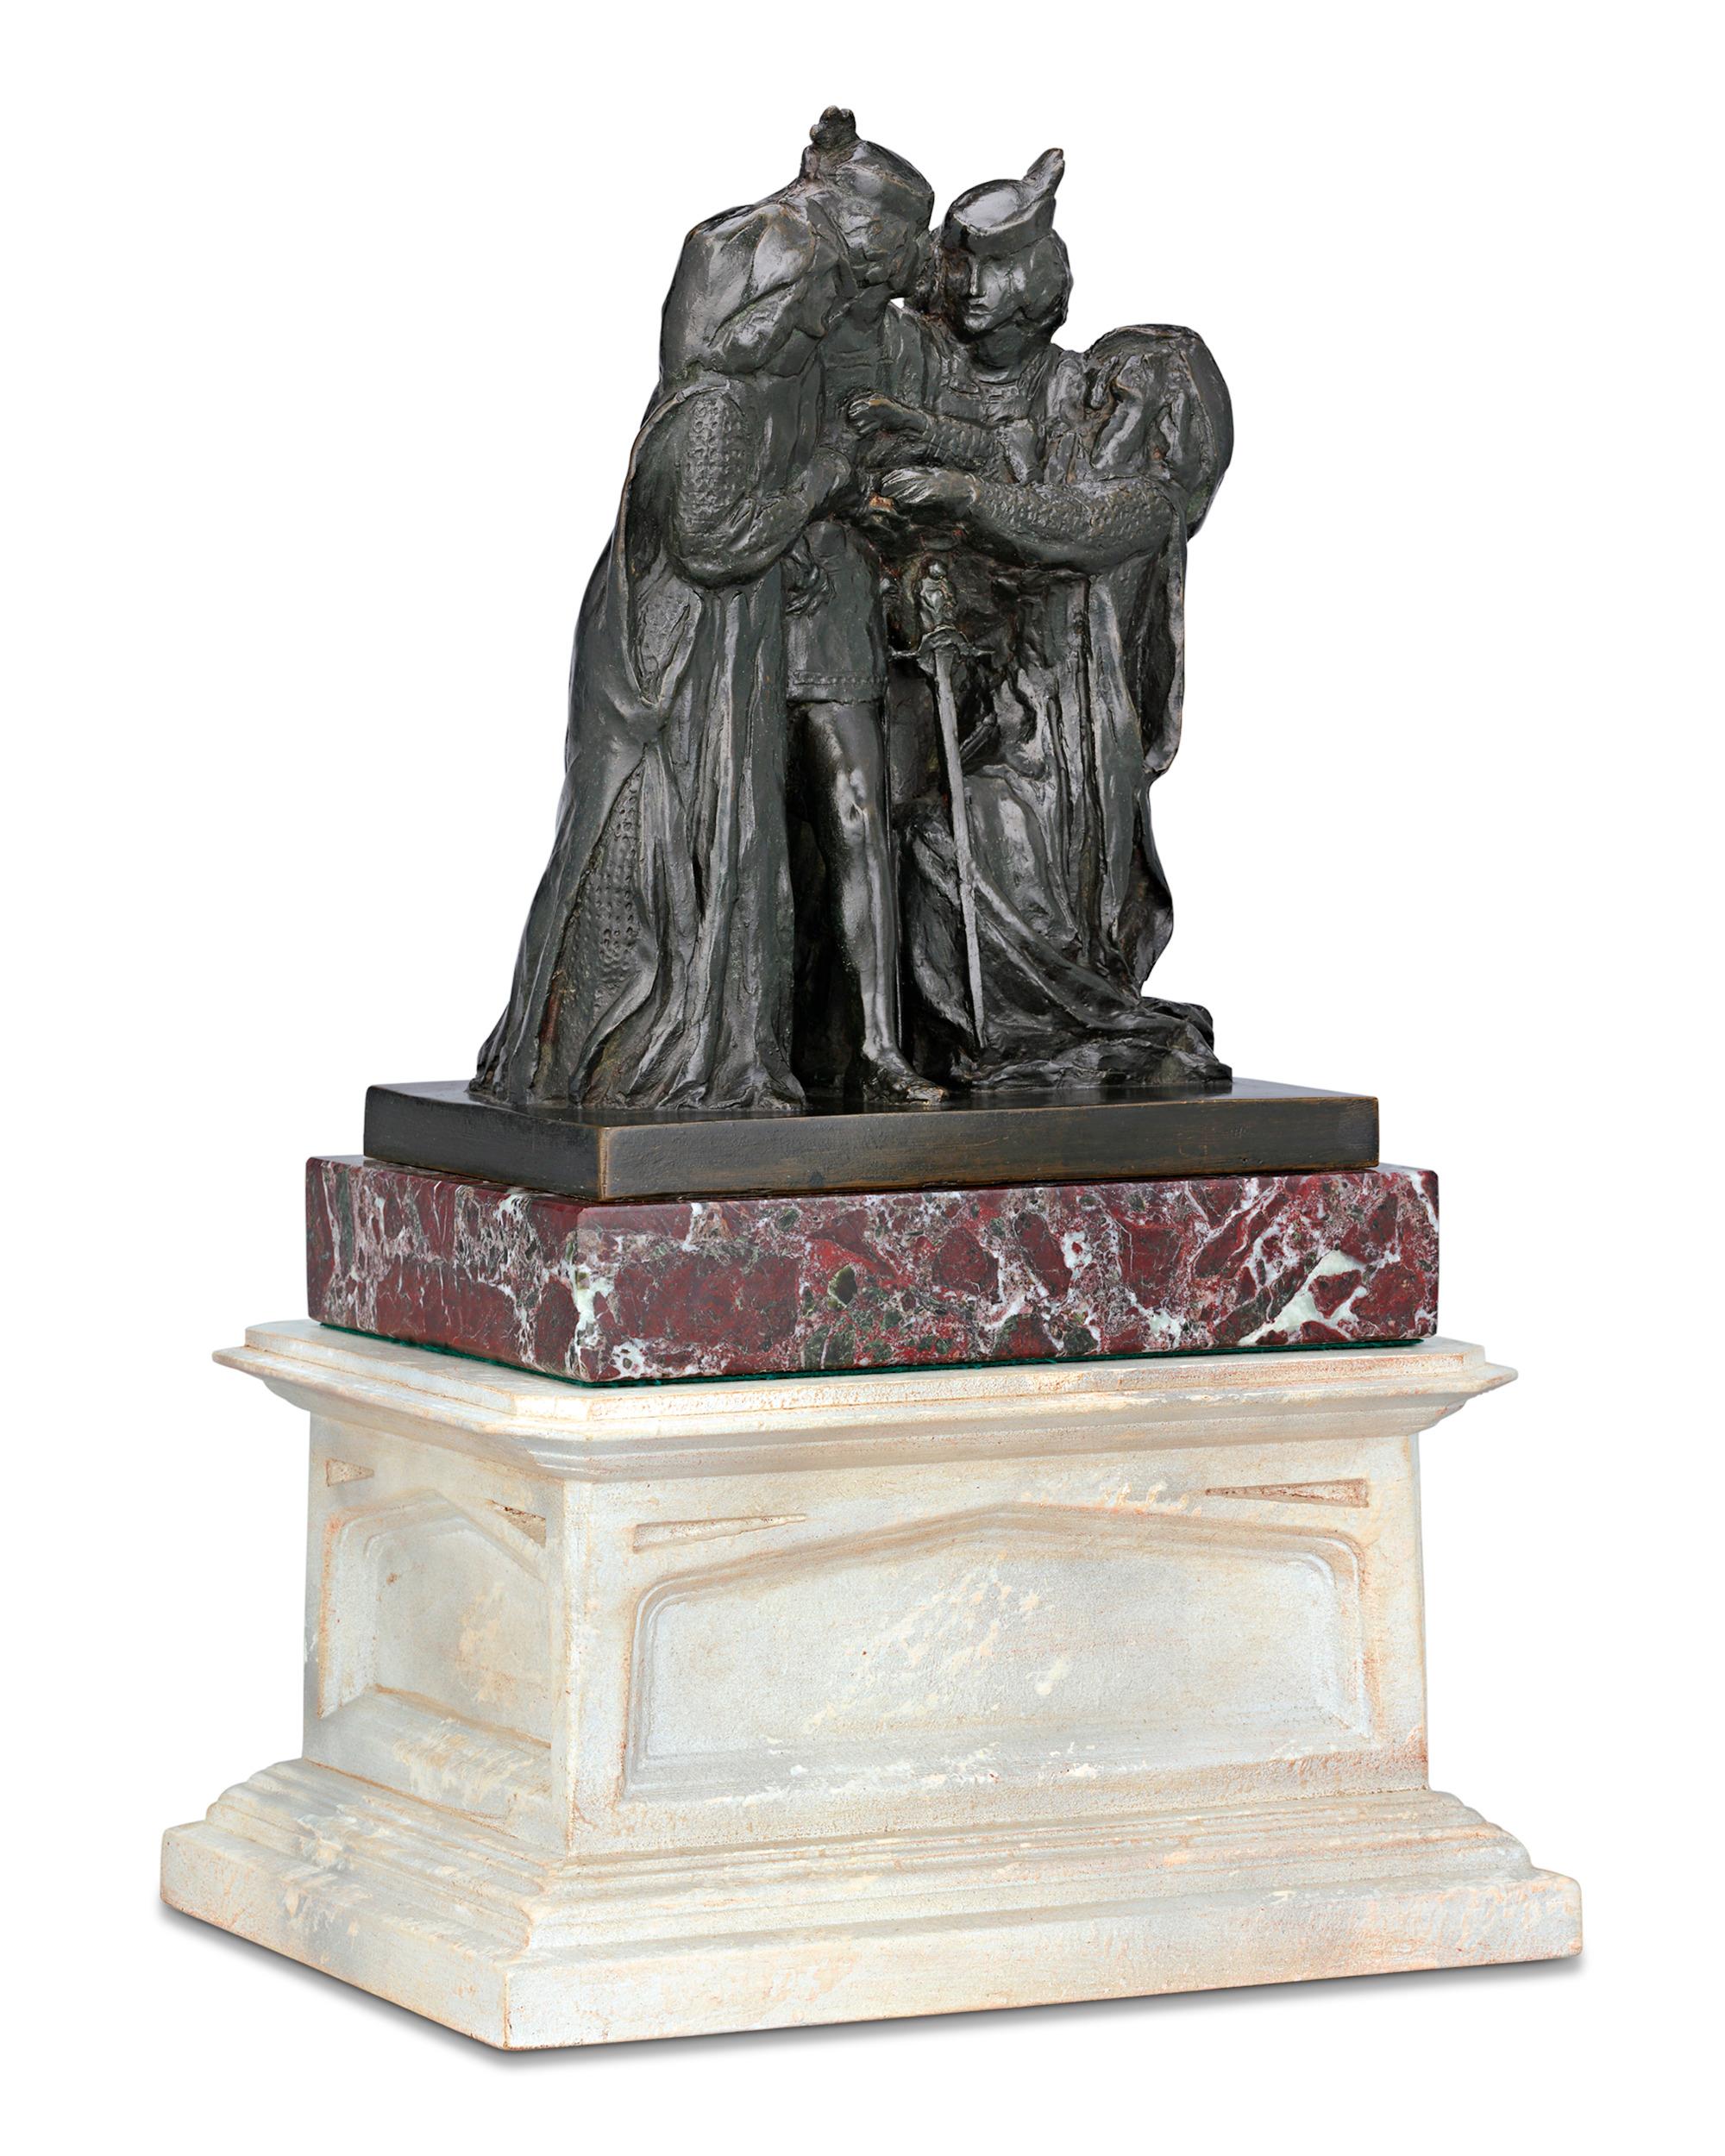 John Singer Sargent
1856-1925  Amerikanisch

Wie sie sich kennengelernt haben

Bronze

John Singer Sargent war einer der erfolgreichsten Künstler seiner Zeit. Im späten 19. Jahrhundert war er der am meisten bewunderte und gefragte Porträtist in